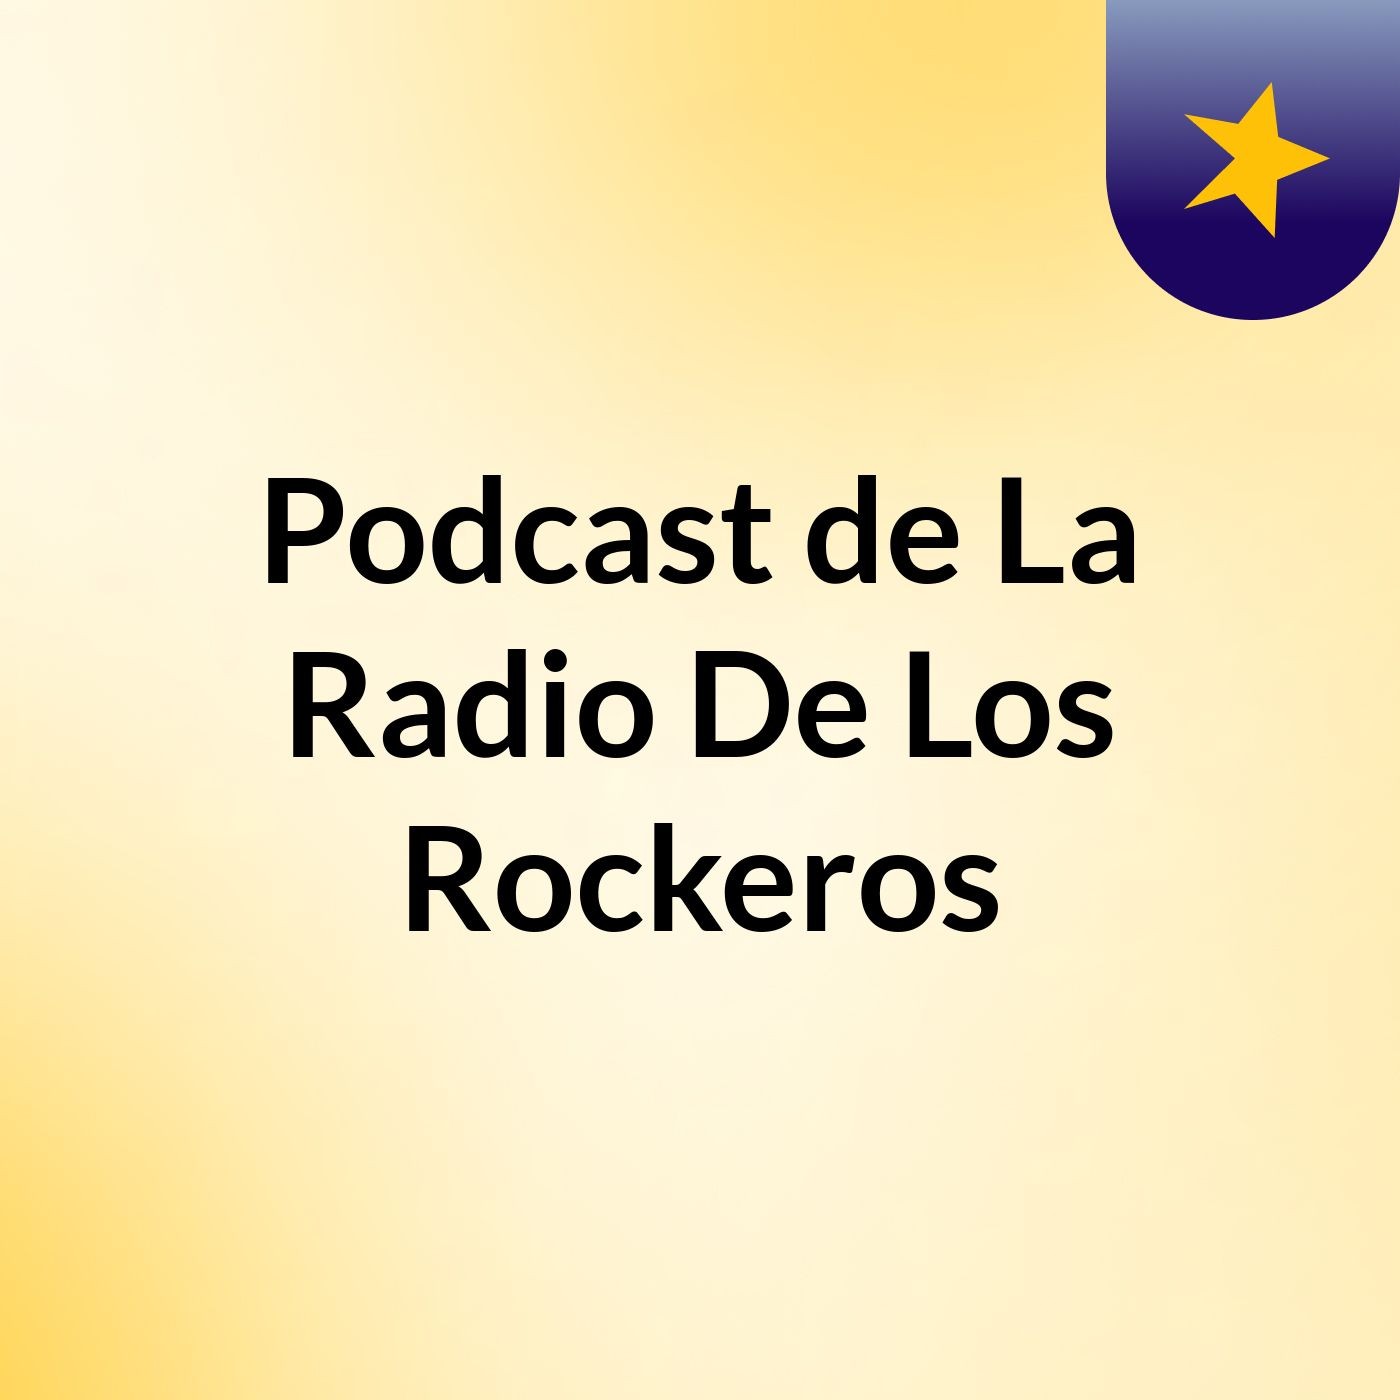 Podcast de La Radio De Los Rockeros